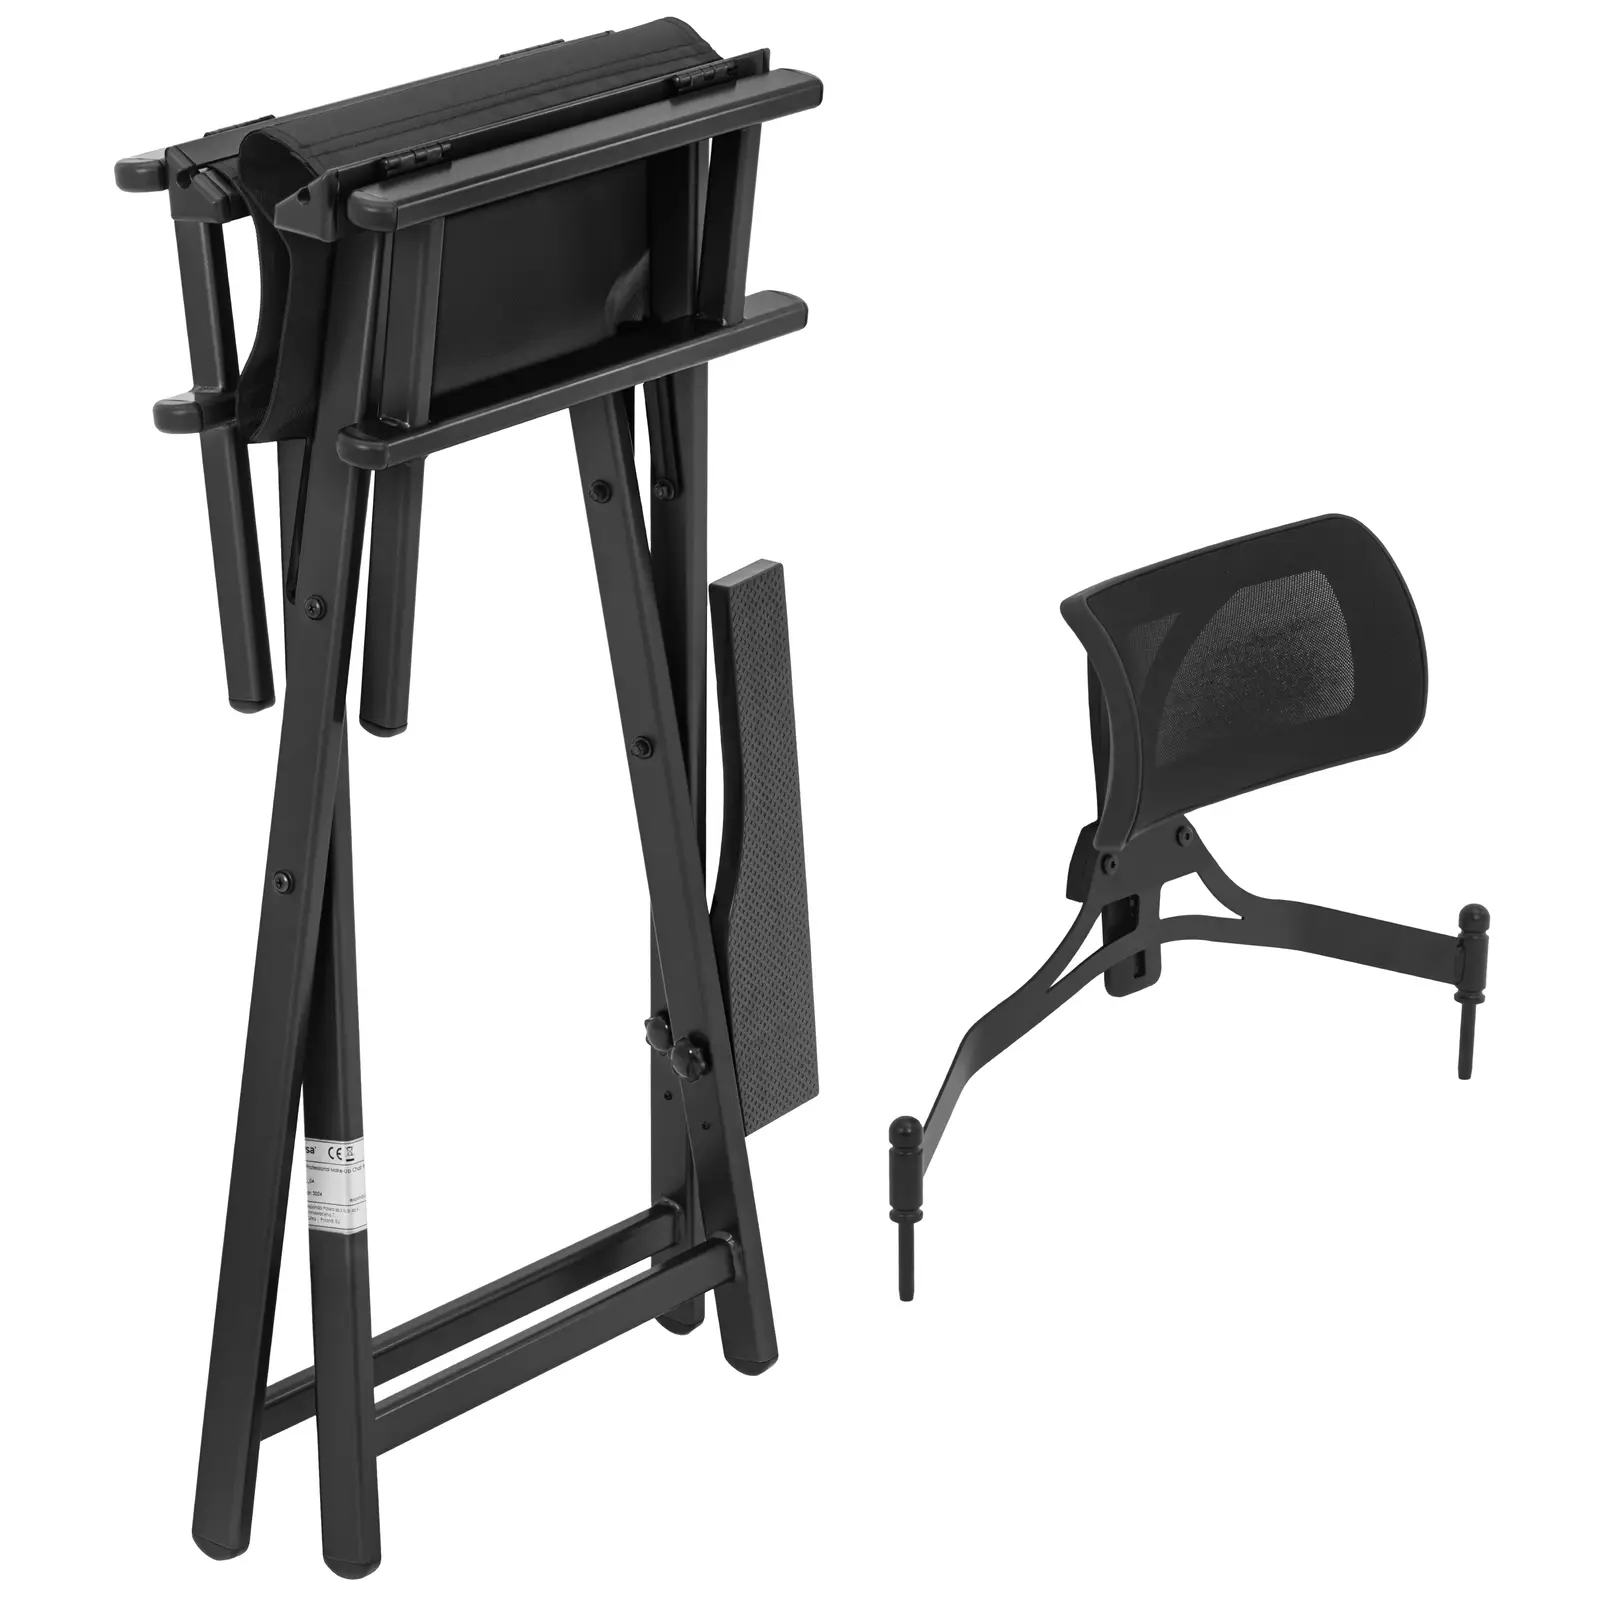 Make-up-Stuhl - mit Kopf- und Fußstütze - faltbar - schwarz